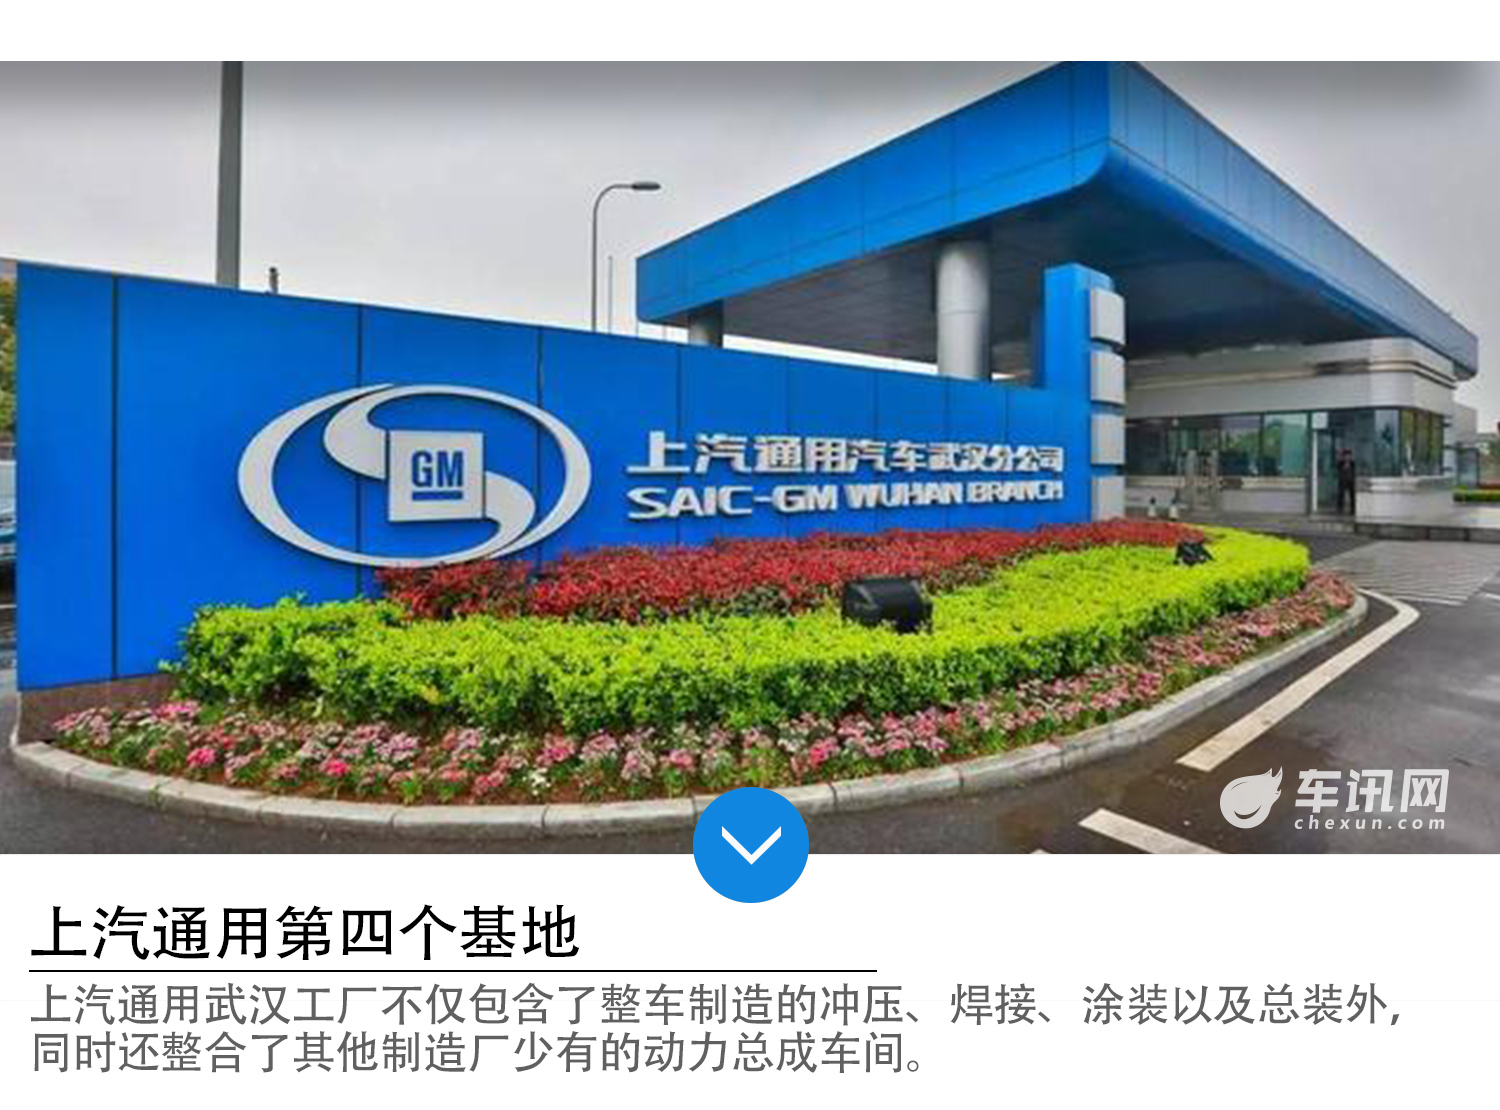 上海通用汽车武汉分公司成立于2012年4月,其位于武汉市江夏区,是上汽